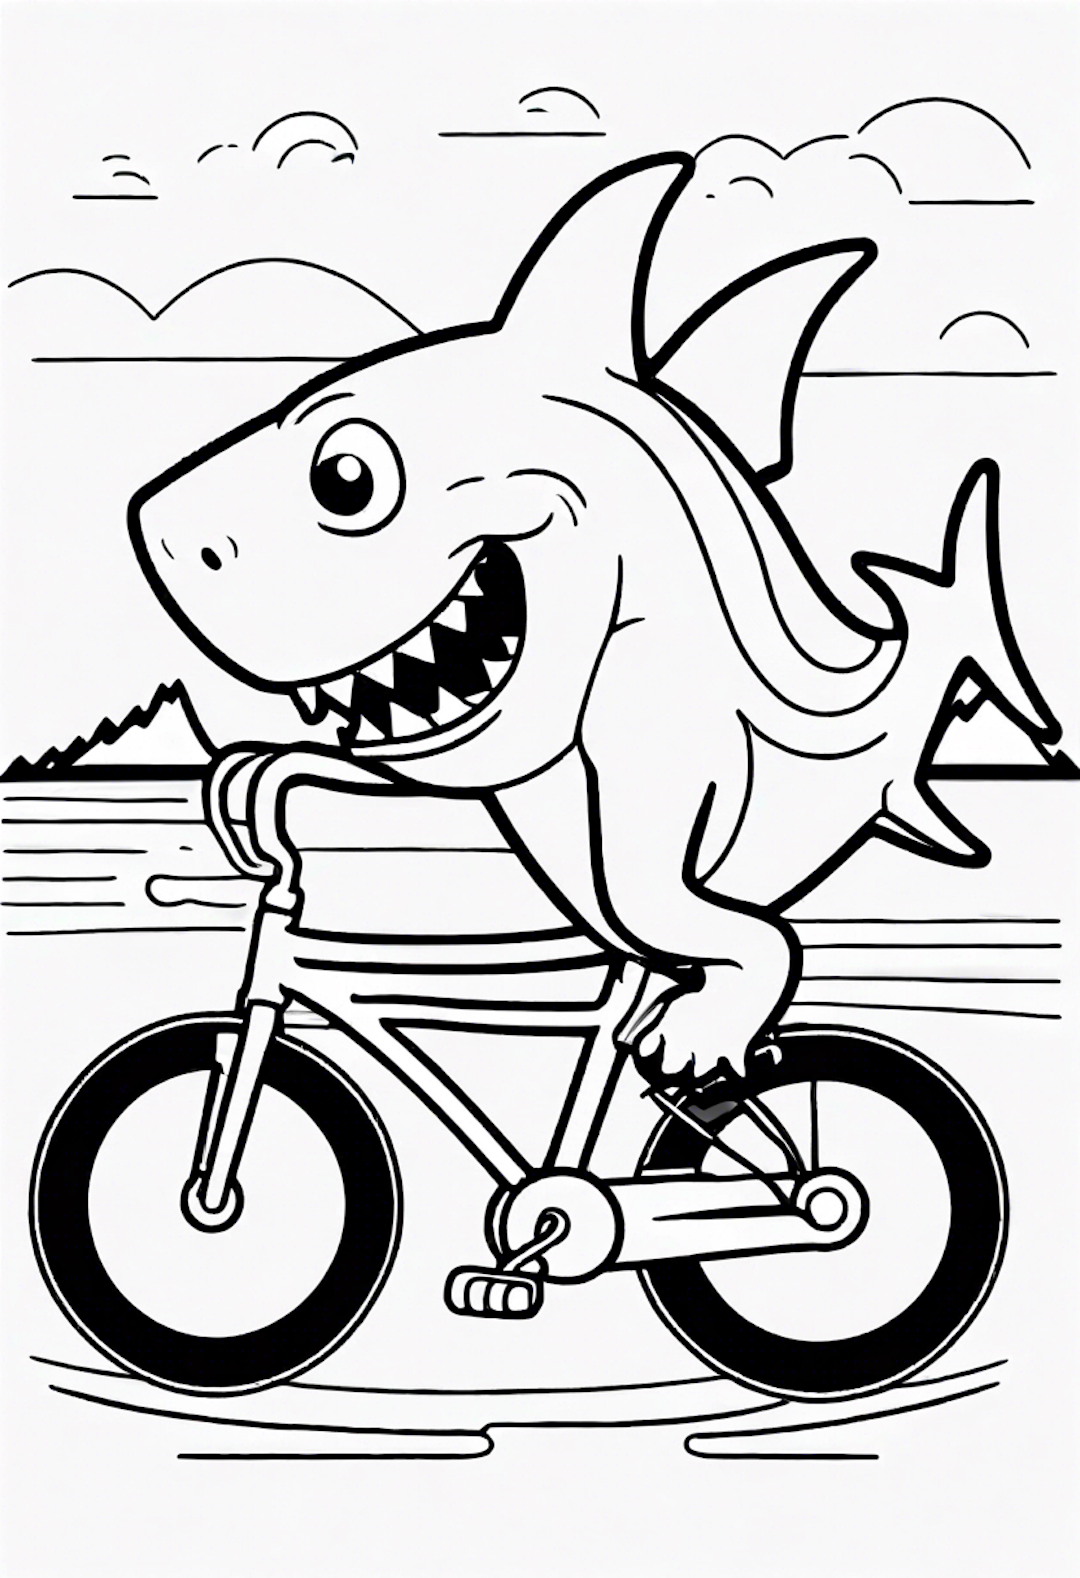 A Cartoon Shark Riding A Bicycle